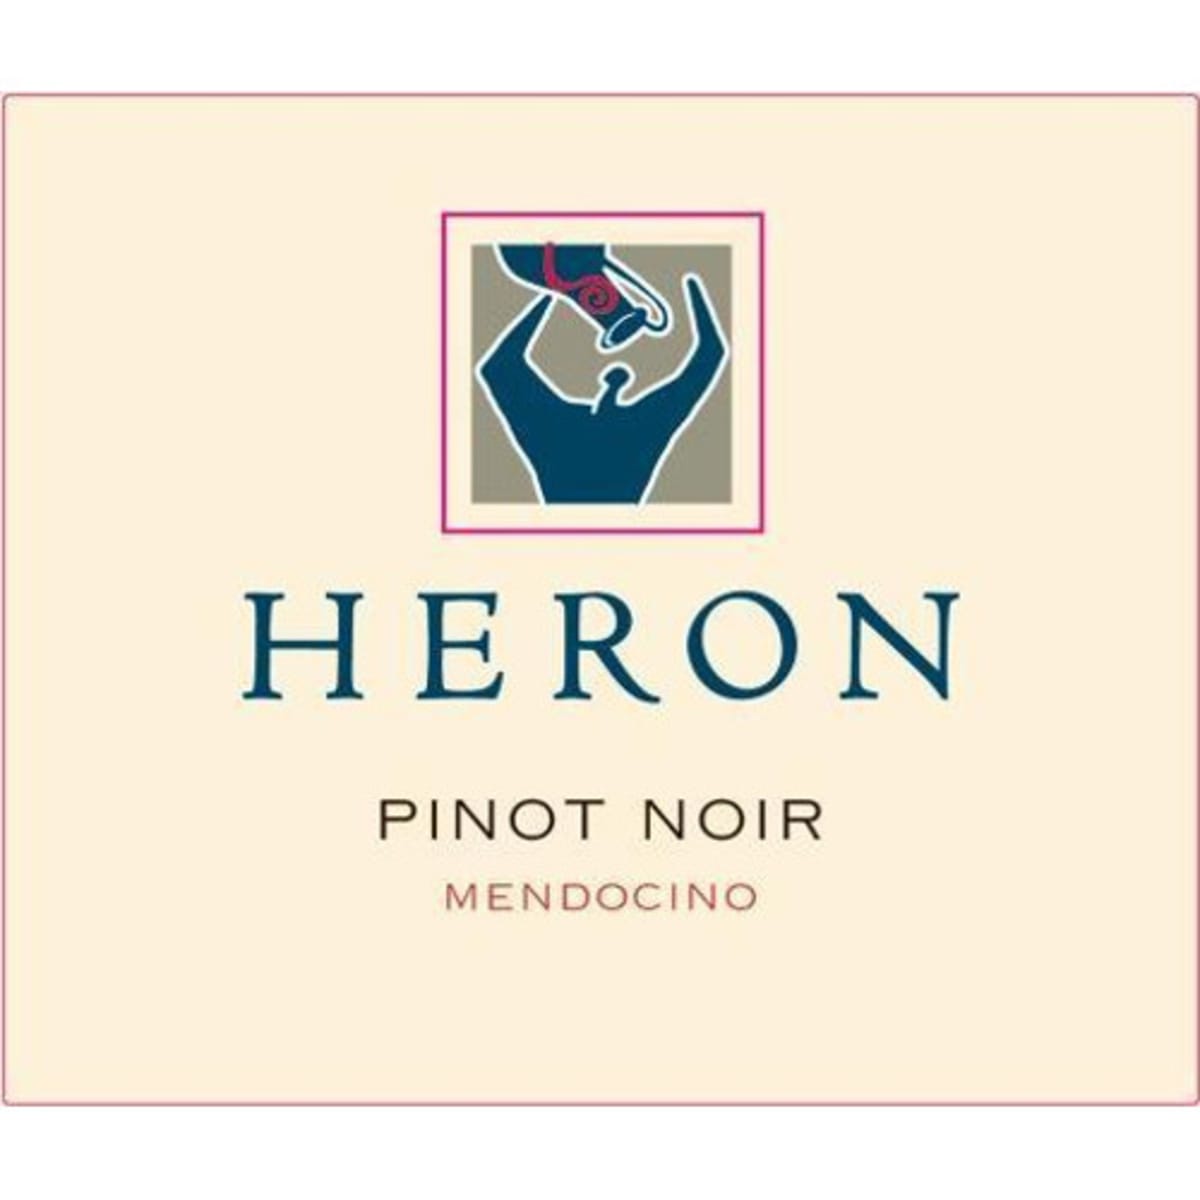 Heron Mendocino Pinot Noir 2011 Front Label